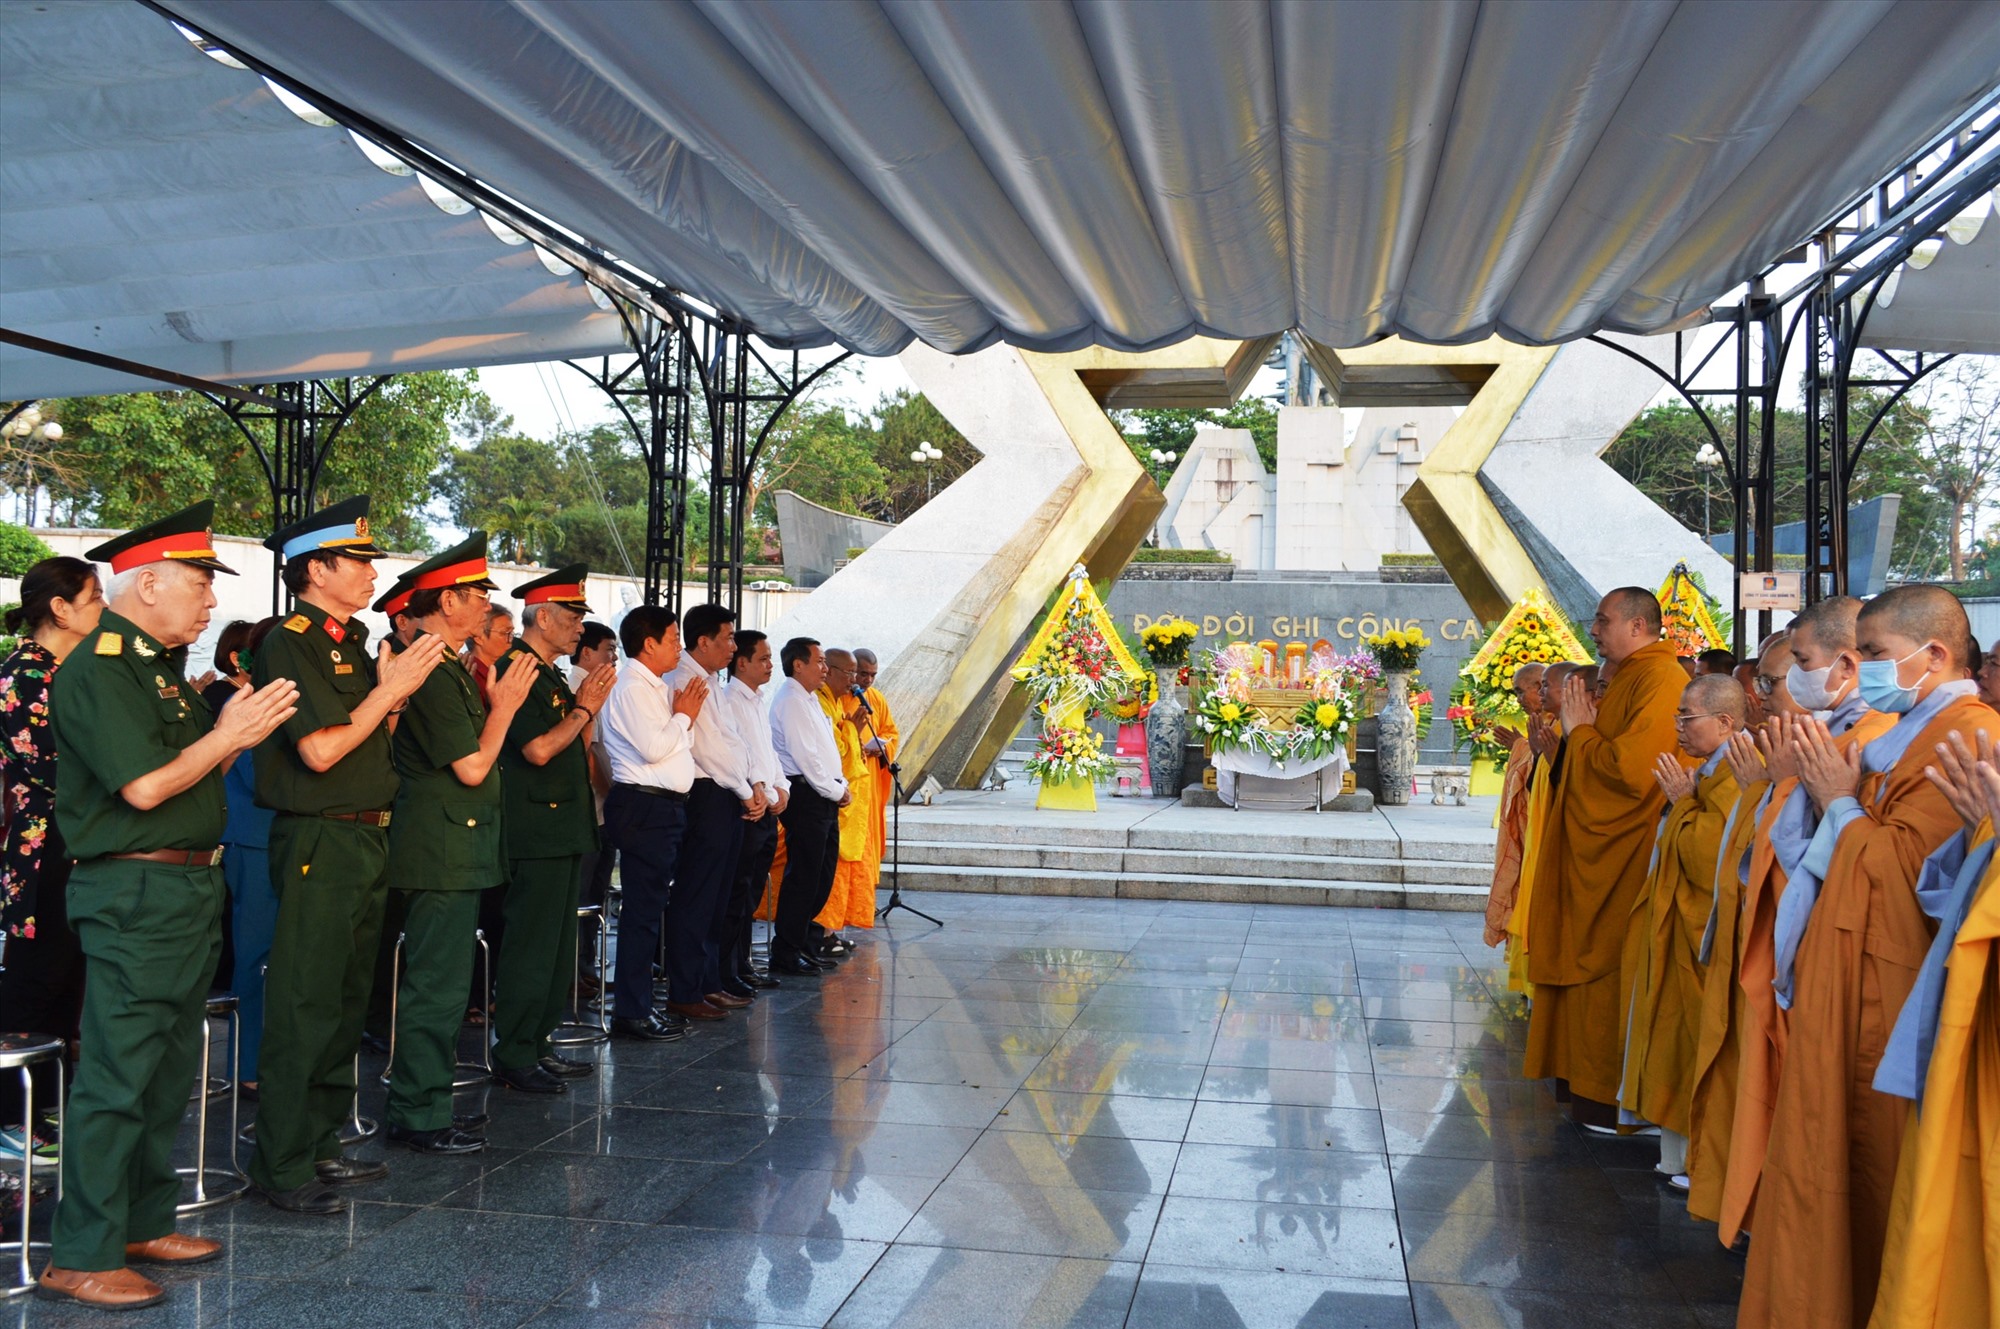 Lễ cầu siêu tưởng niệm các anh hùng liệt sĩ tại Nghĩa trang liệt sĩ quốc gia Đường 9 do Giáo hội Phật giáo Việt Nam huyện Triệu Phong, Tổ đình Thắng Phúc (TP. Hải Phòng) và Binh đoàn Trường Sơn phối hợp tổ chức - Ảnh: ĐV